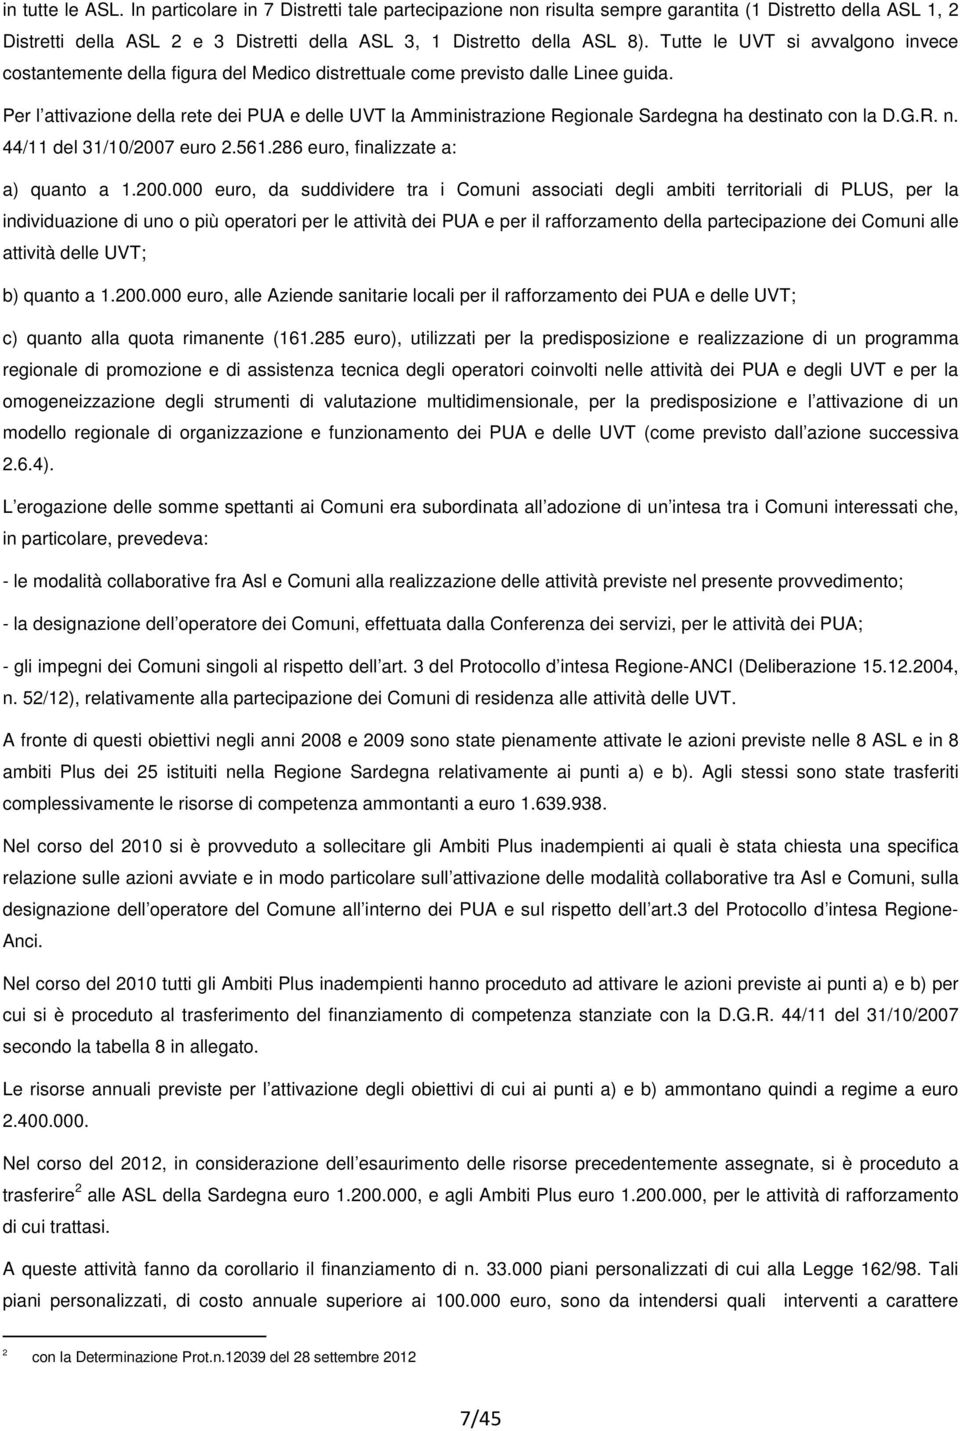 Per l attivazione della rete dei PUA e delle UVT la Amministrazione Regionale Sardegna ha destinato con la D.G.R. n. 44/11 del 31/10/2007